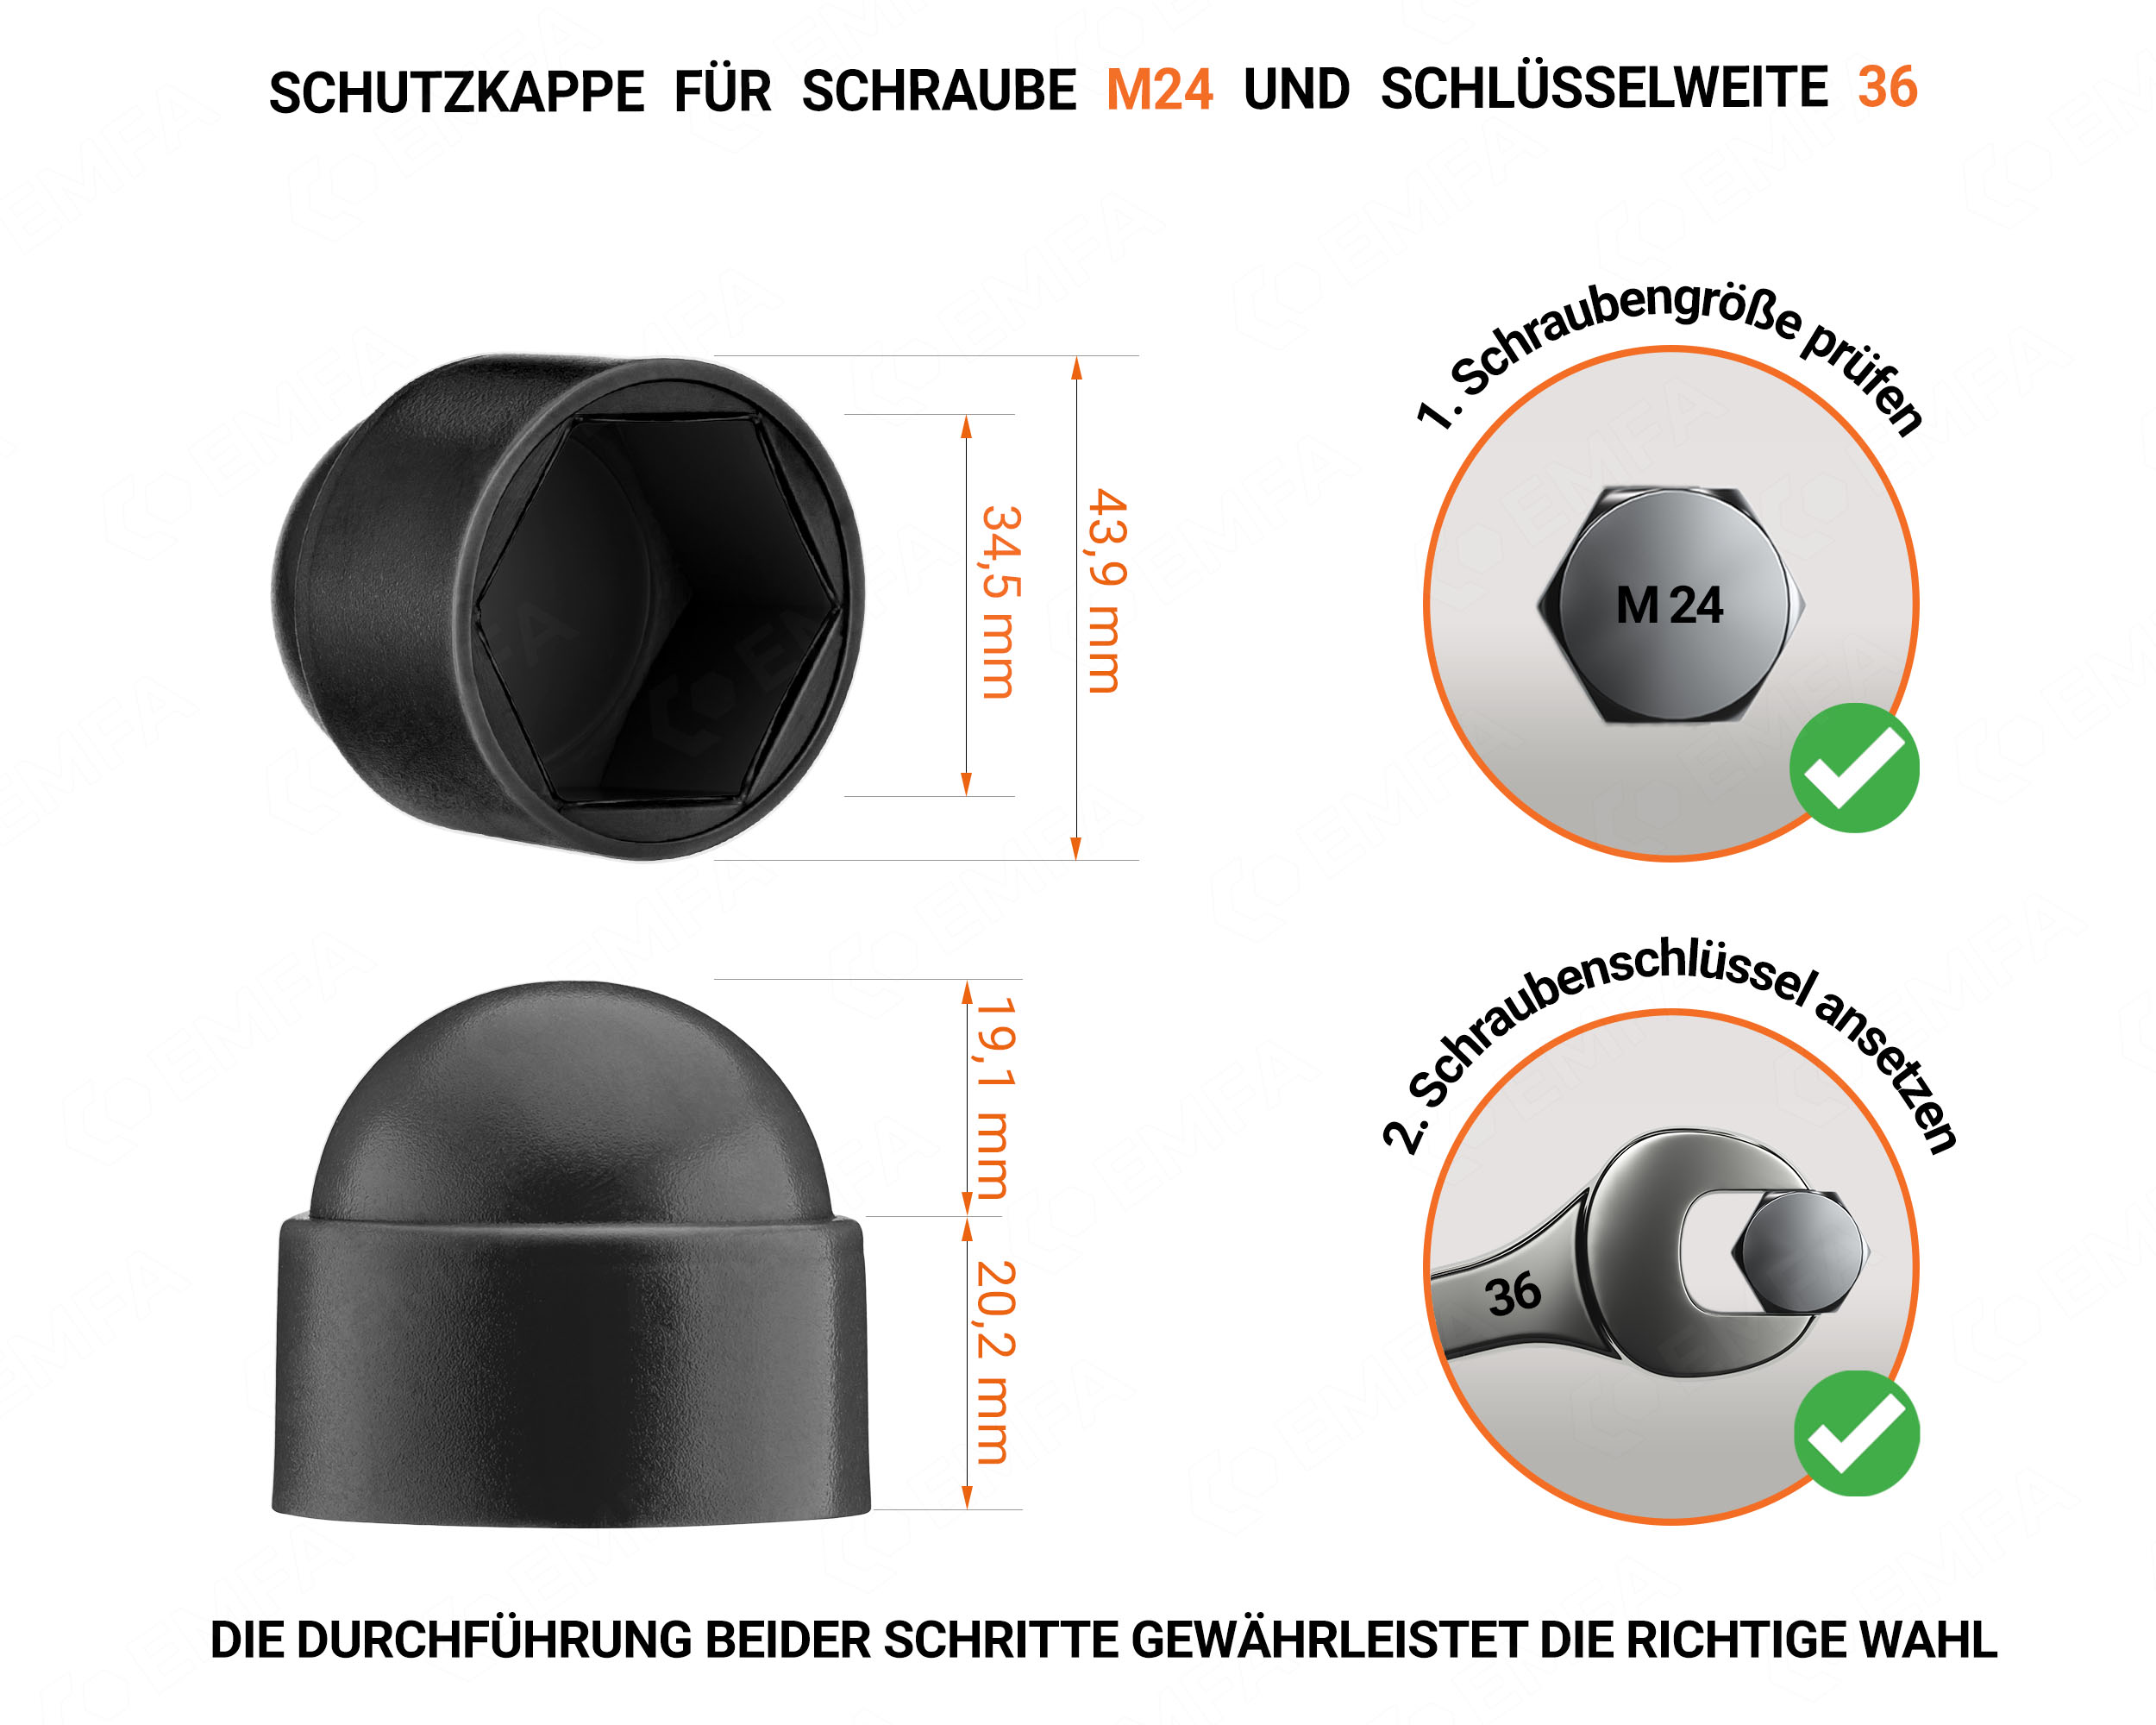 Schwarze Schutzkappen für Schrauben M24 Schlüsselweite 36 mit technischen Abmessungen und Anleitung für korrekte Messung